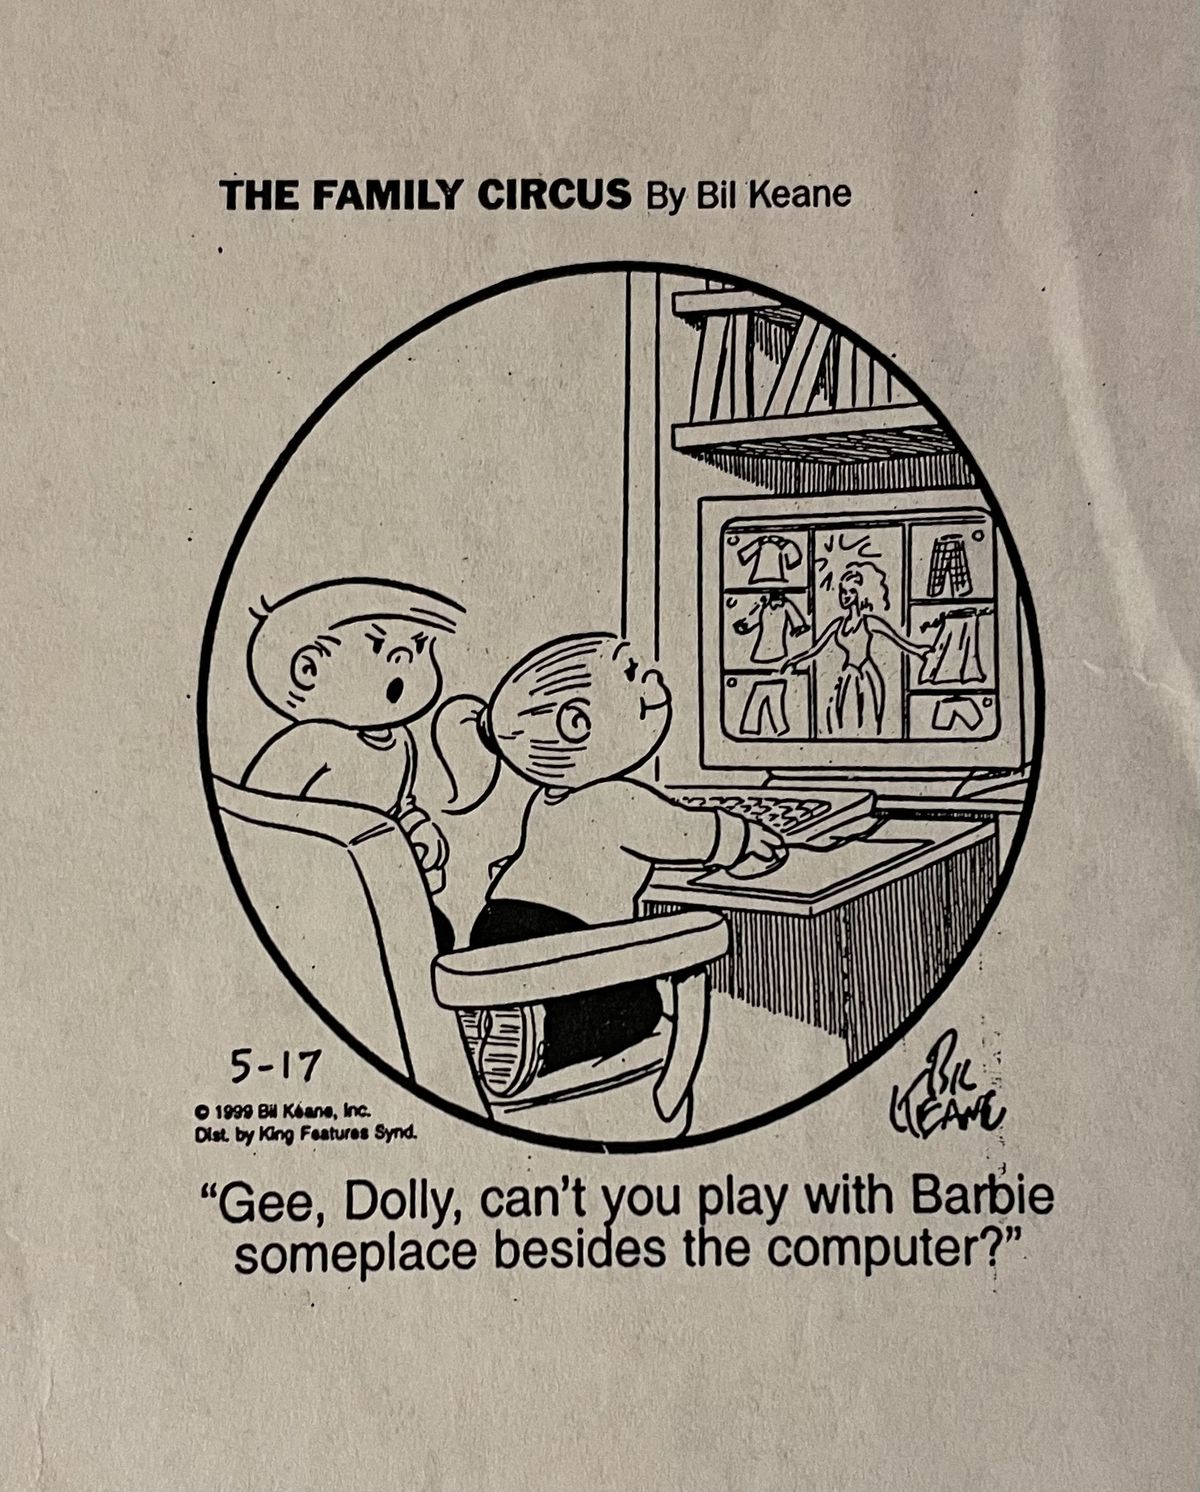 Een knipsel van de strip The Family Circus. Een klein meisje speelt het spel op een desktopcomputer en een boos uitziende jonge jongen vraagt: "Goh, Dolly, kun je niet ergens naast de computer met Barbie spelen?"